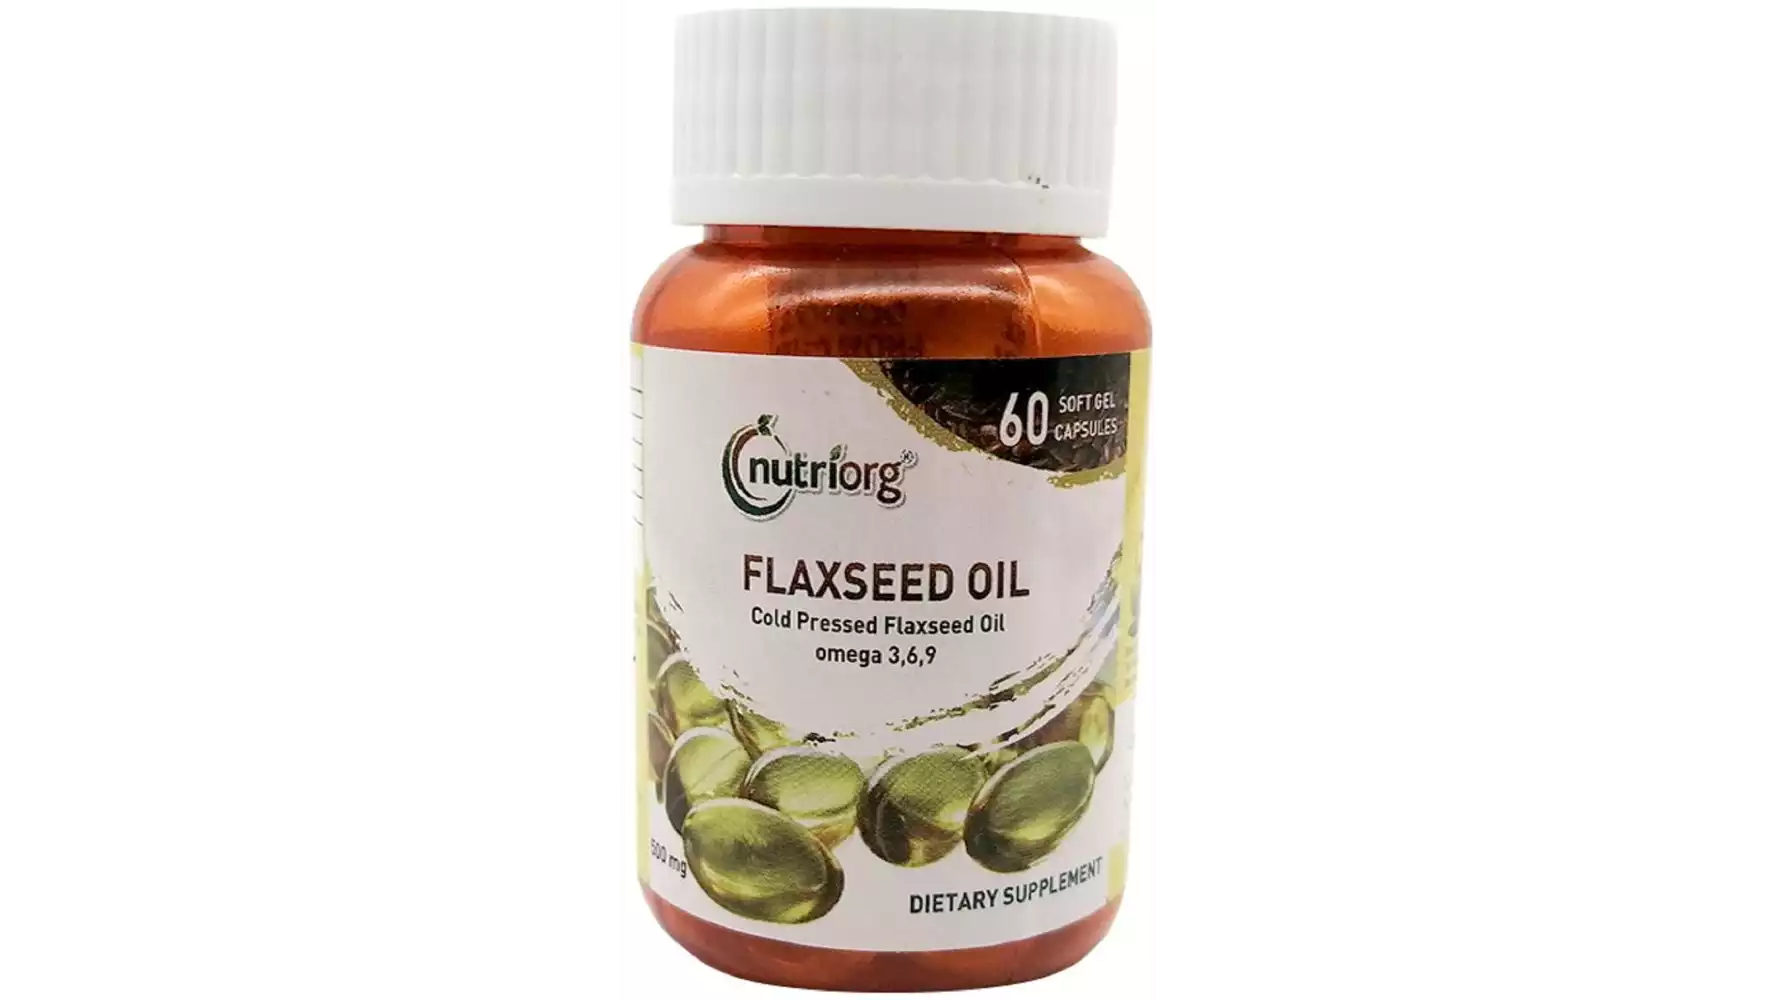 Nutriorg Flaxseed Oil Soft Gel Capsule (60caps)